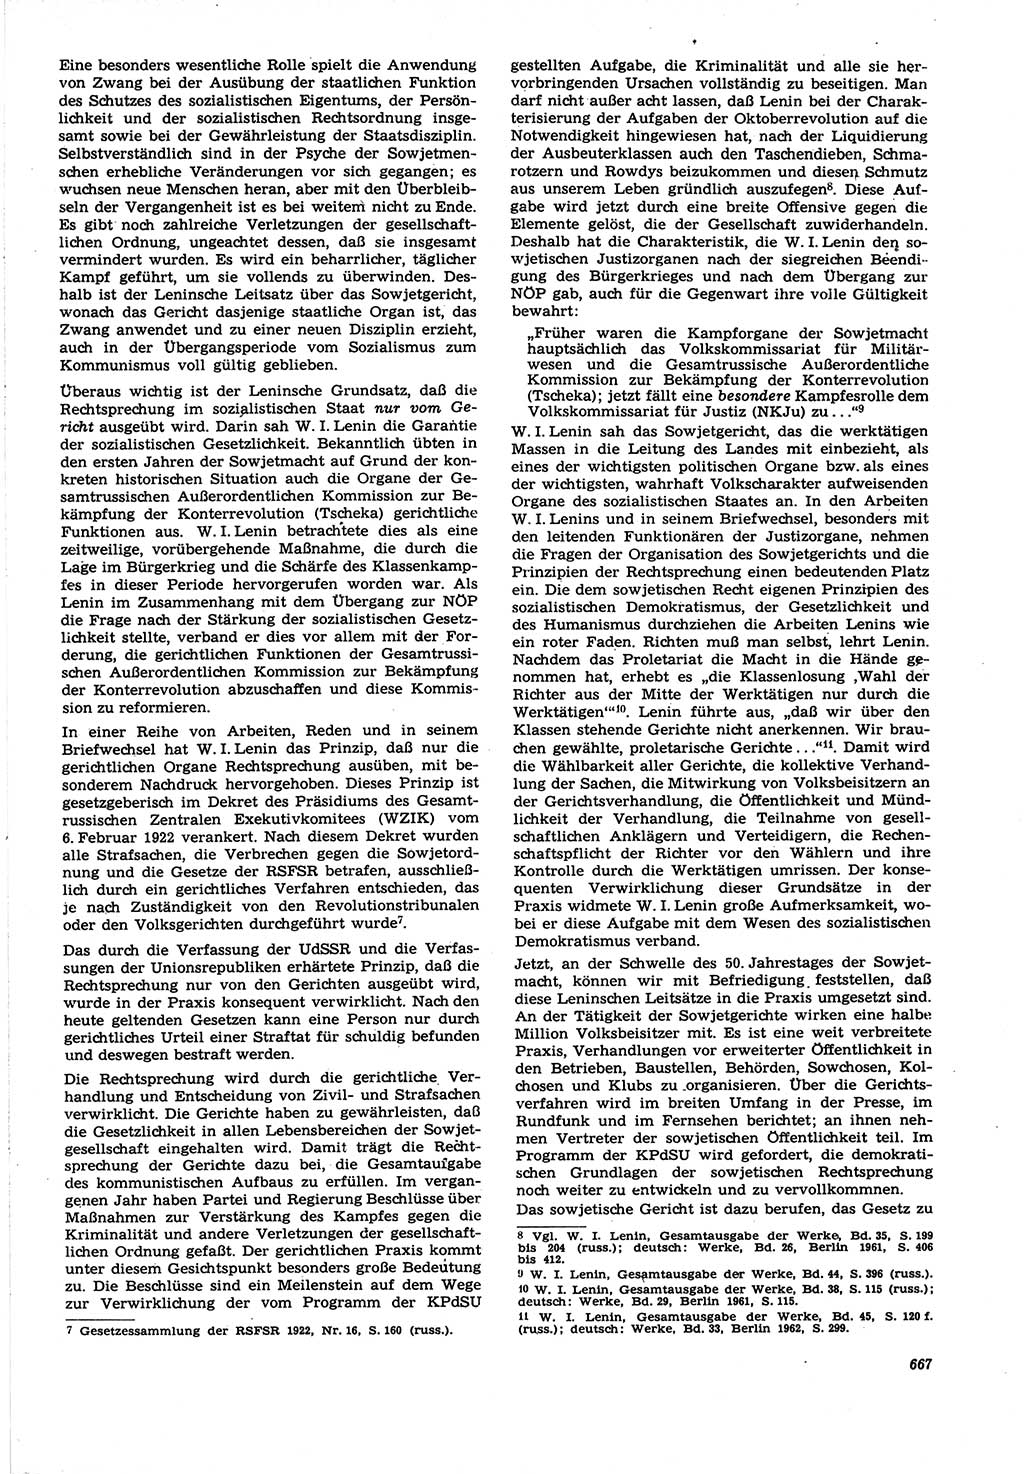 Neue Justiz (NJ), Zeitschrift für Recht und Rechtswissenschaft [Deutsche Demokratische Republik (DDR)], 21. Jahrgang 1967, Seite 667 (NJ DDR 1967, S. 667)